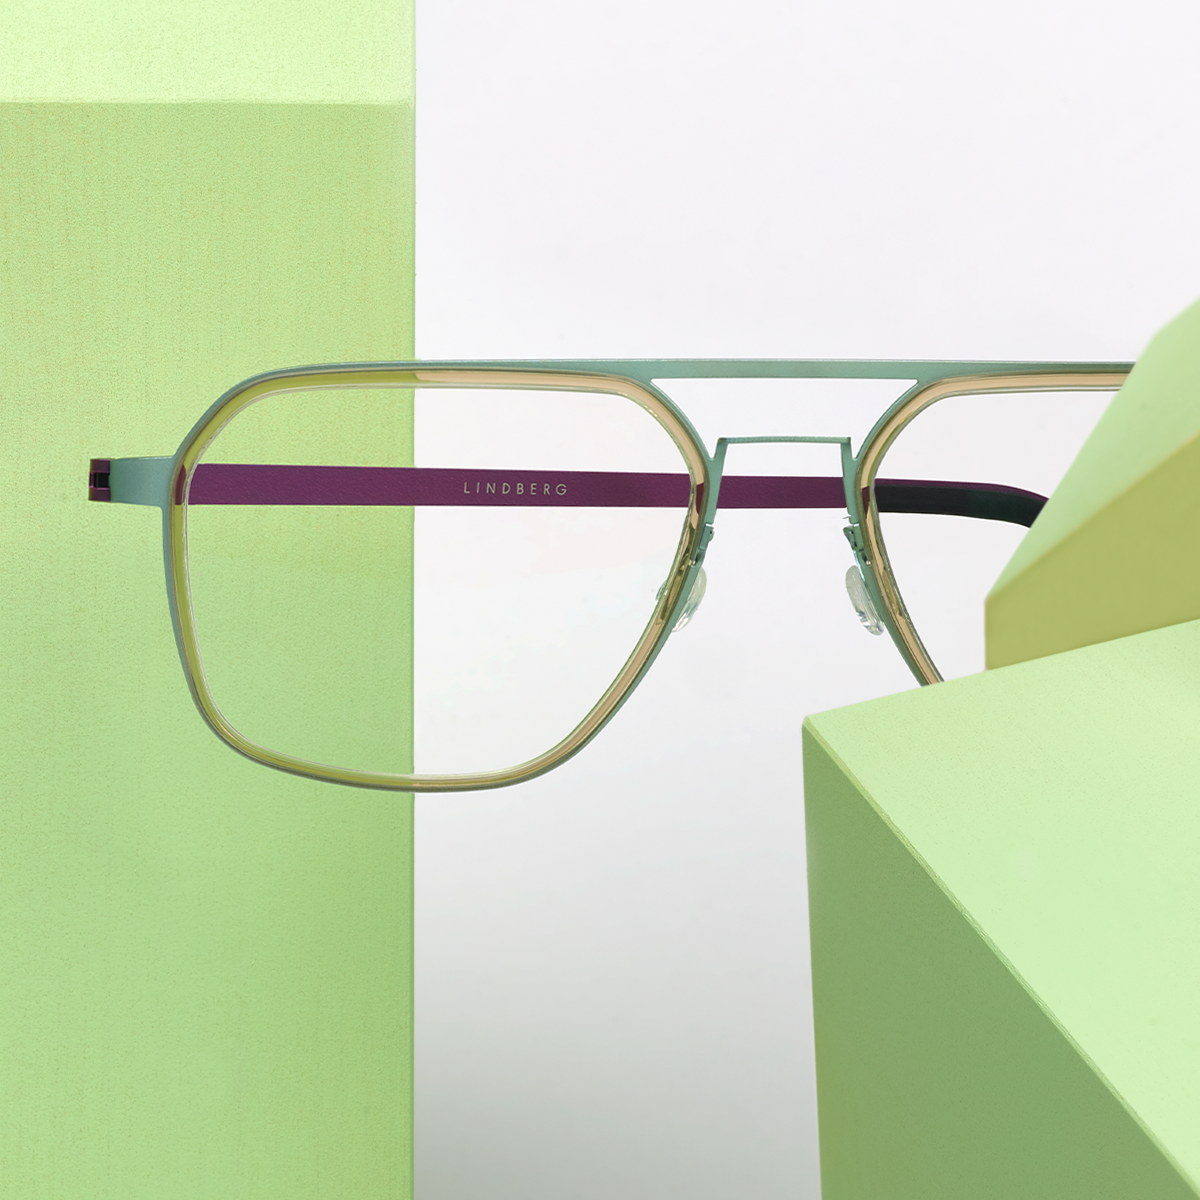 LINDBERG strip titanium, Modell 9753, eckige Brille mit Doppelsteg und grüner Front aus Titan, lila Bügeln und transparenter Innenfassung